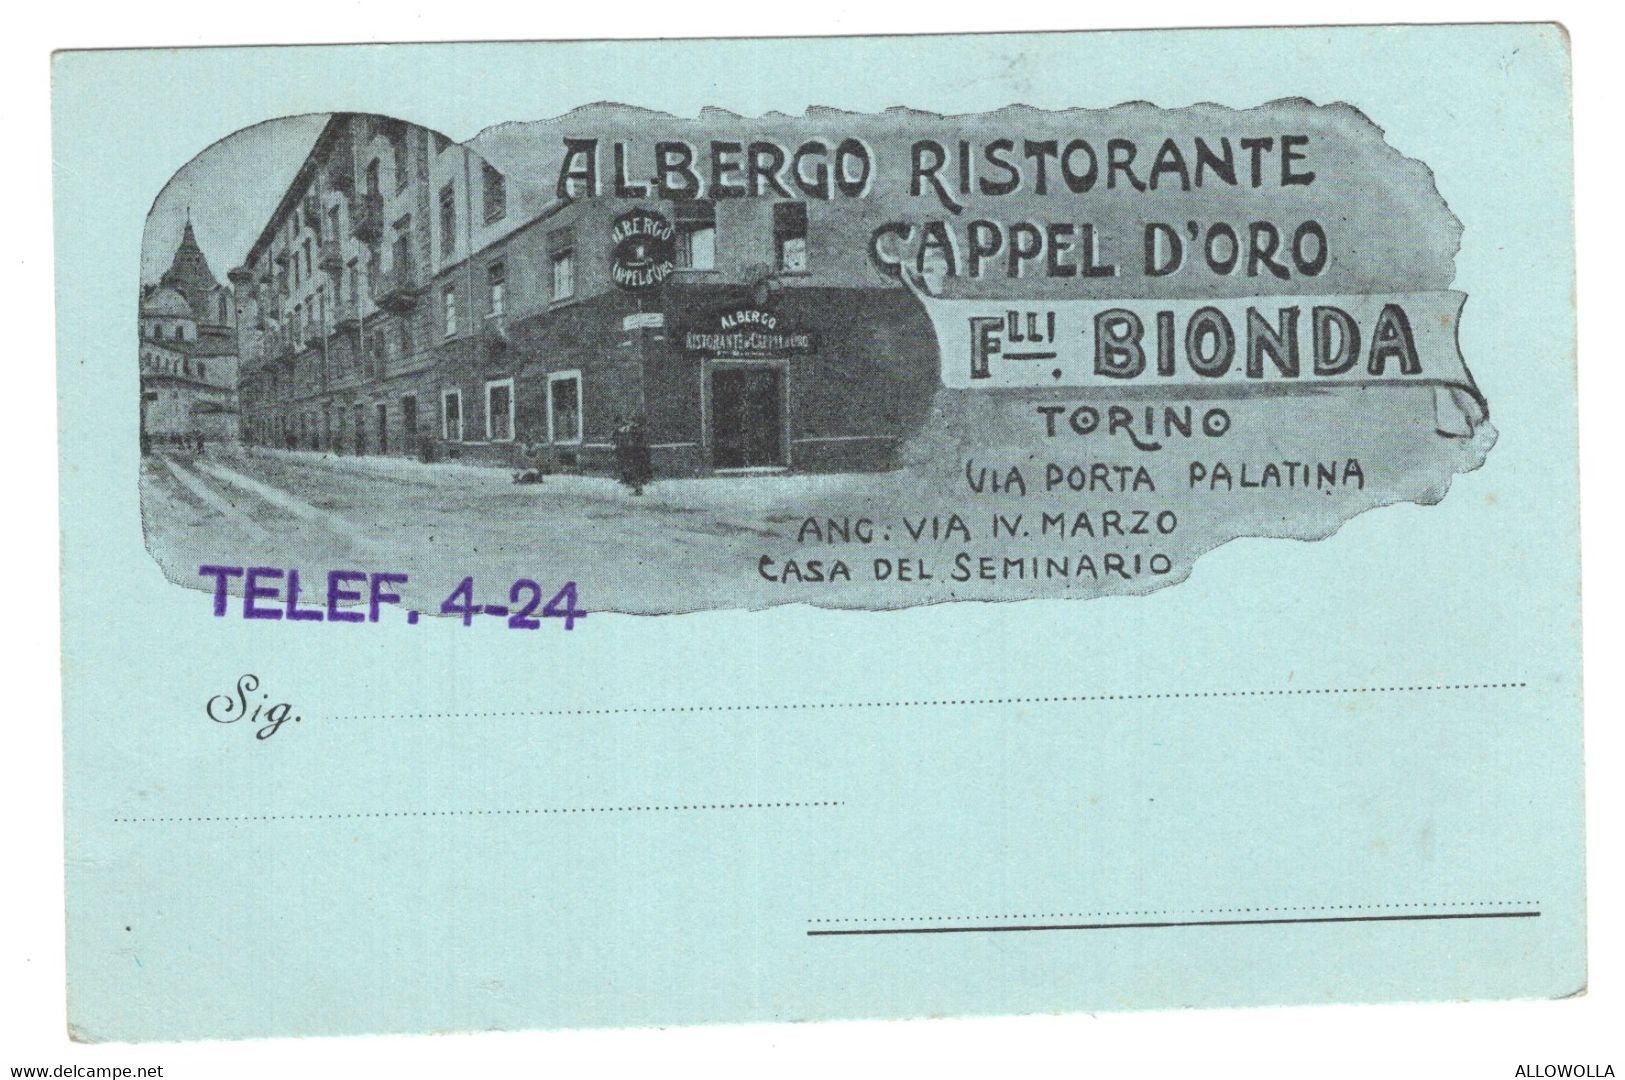 16528 "ALBERGO RISTORANTE CAPPEL D'ORO-F.LLI BIONDA-TORINO"-VERA FOTO-CART. POST. NON SPED. - Bar, Alberghi & Ristoranti